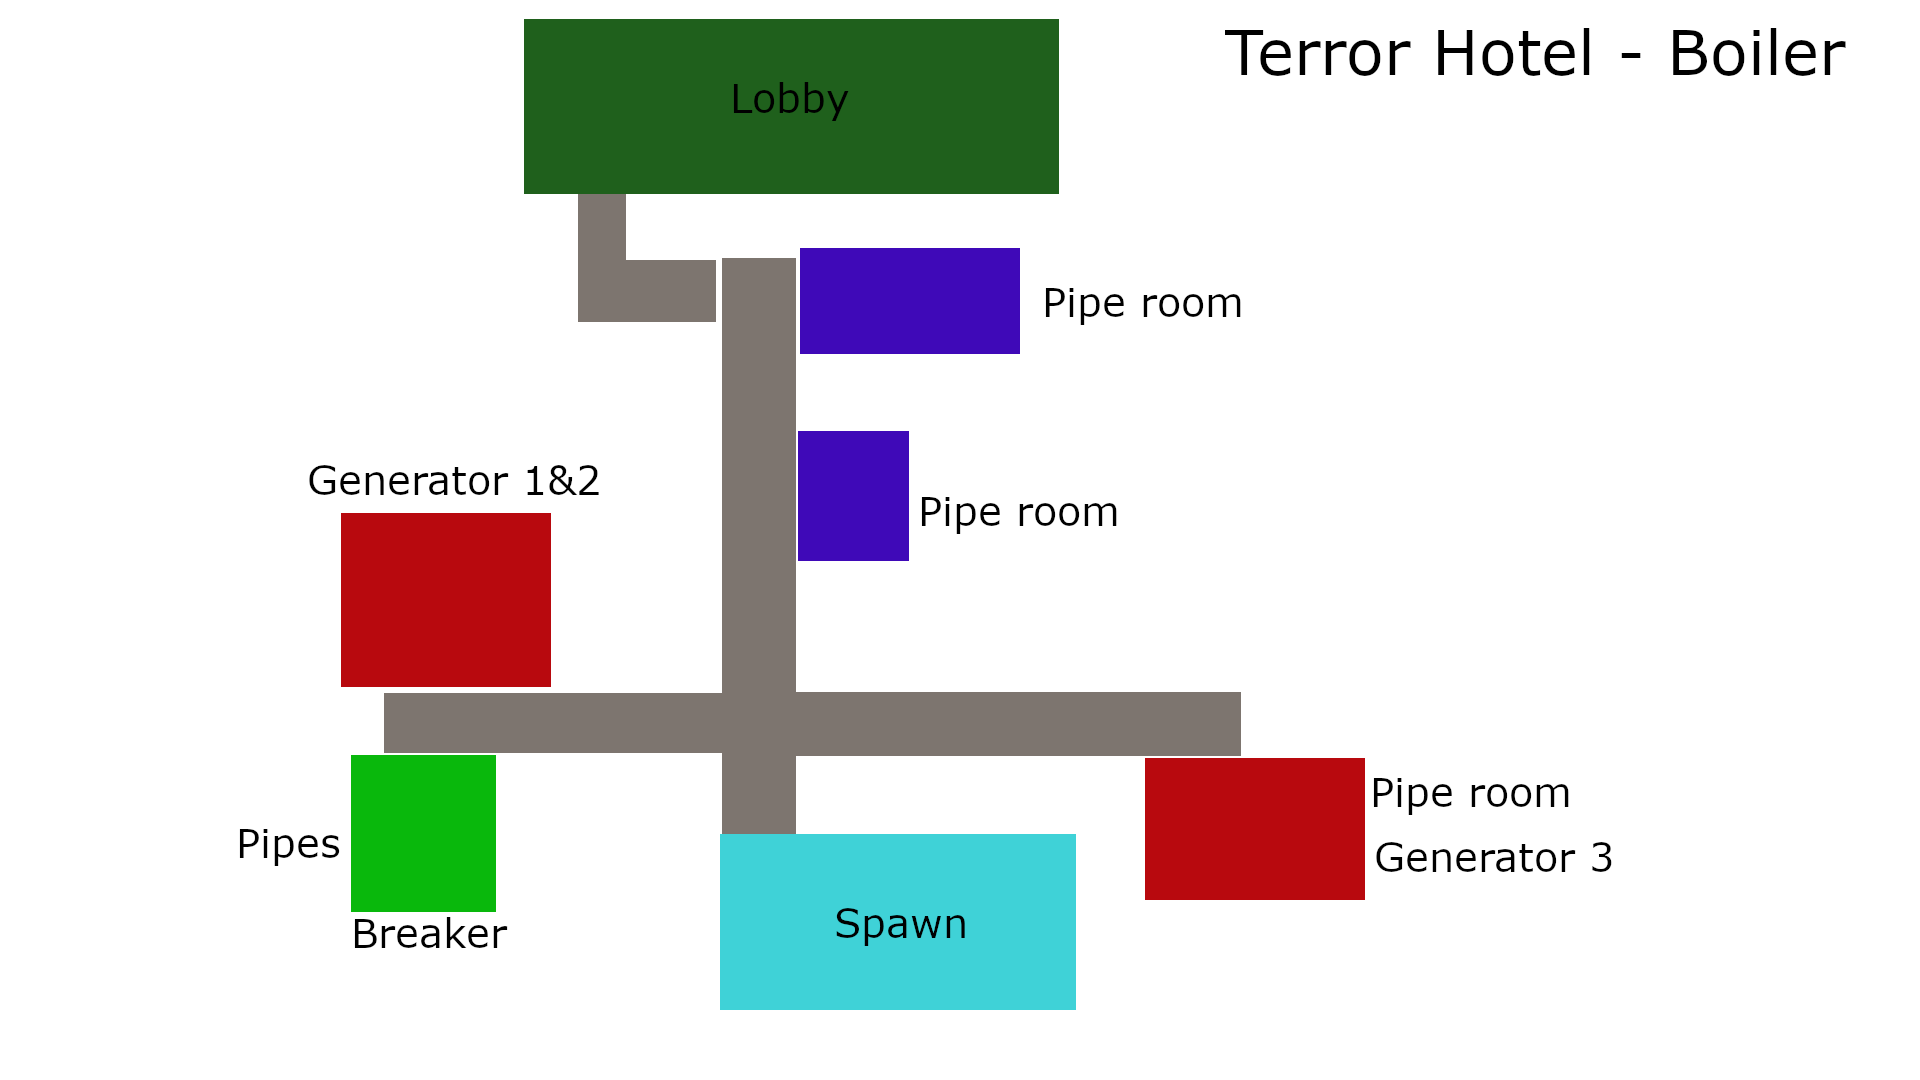 Level 3: Power Plant - Escape the Backrooms